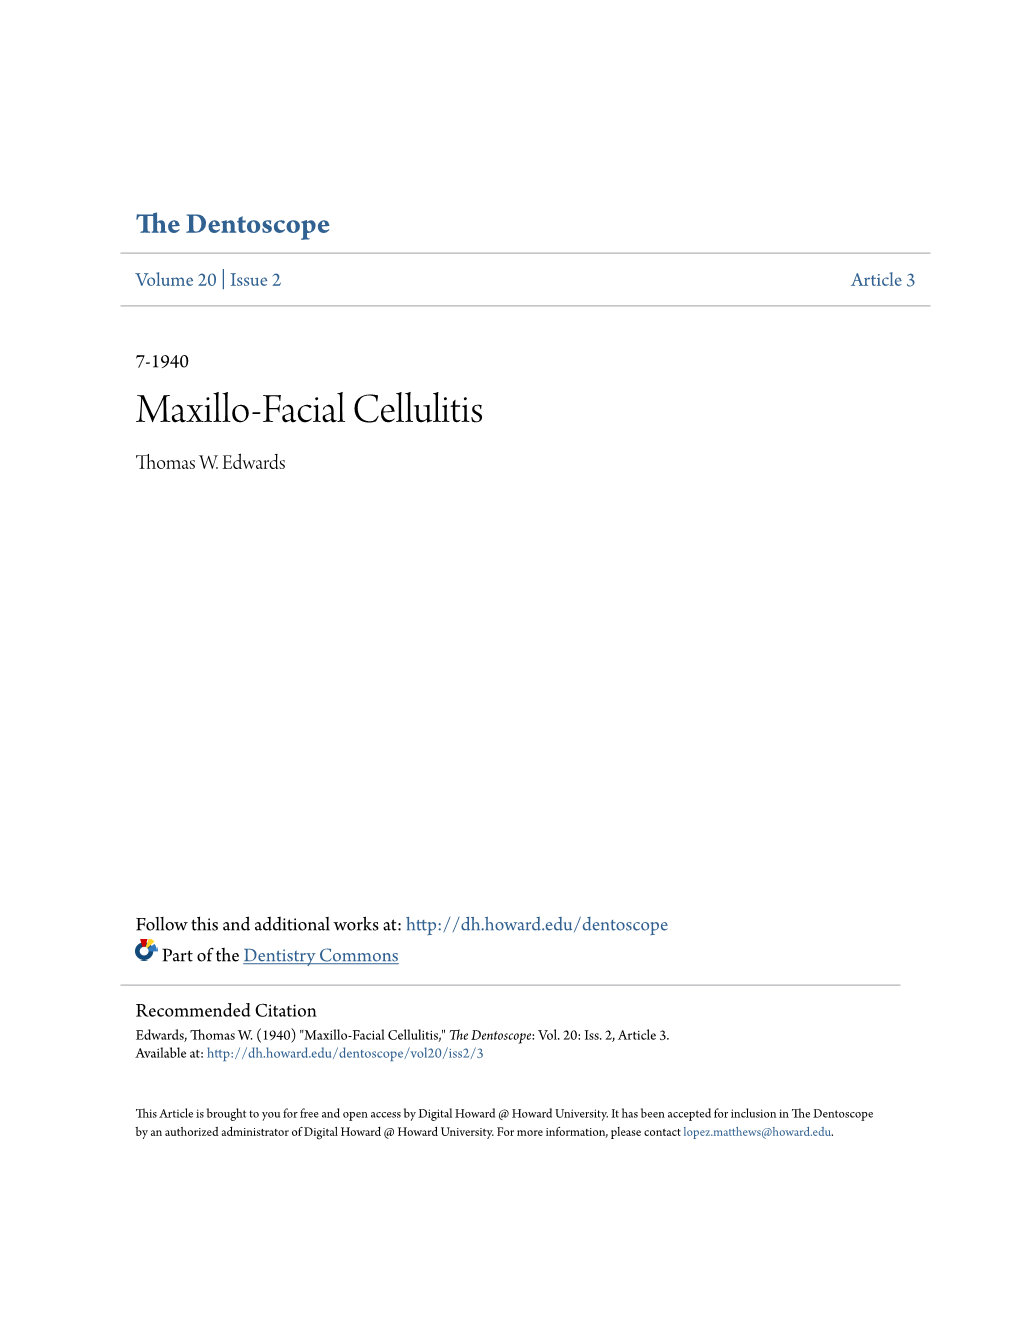 Maxillo-Facial Cellulitis Thomas W